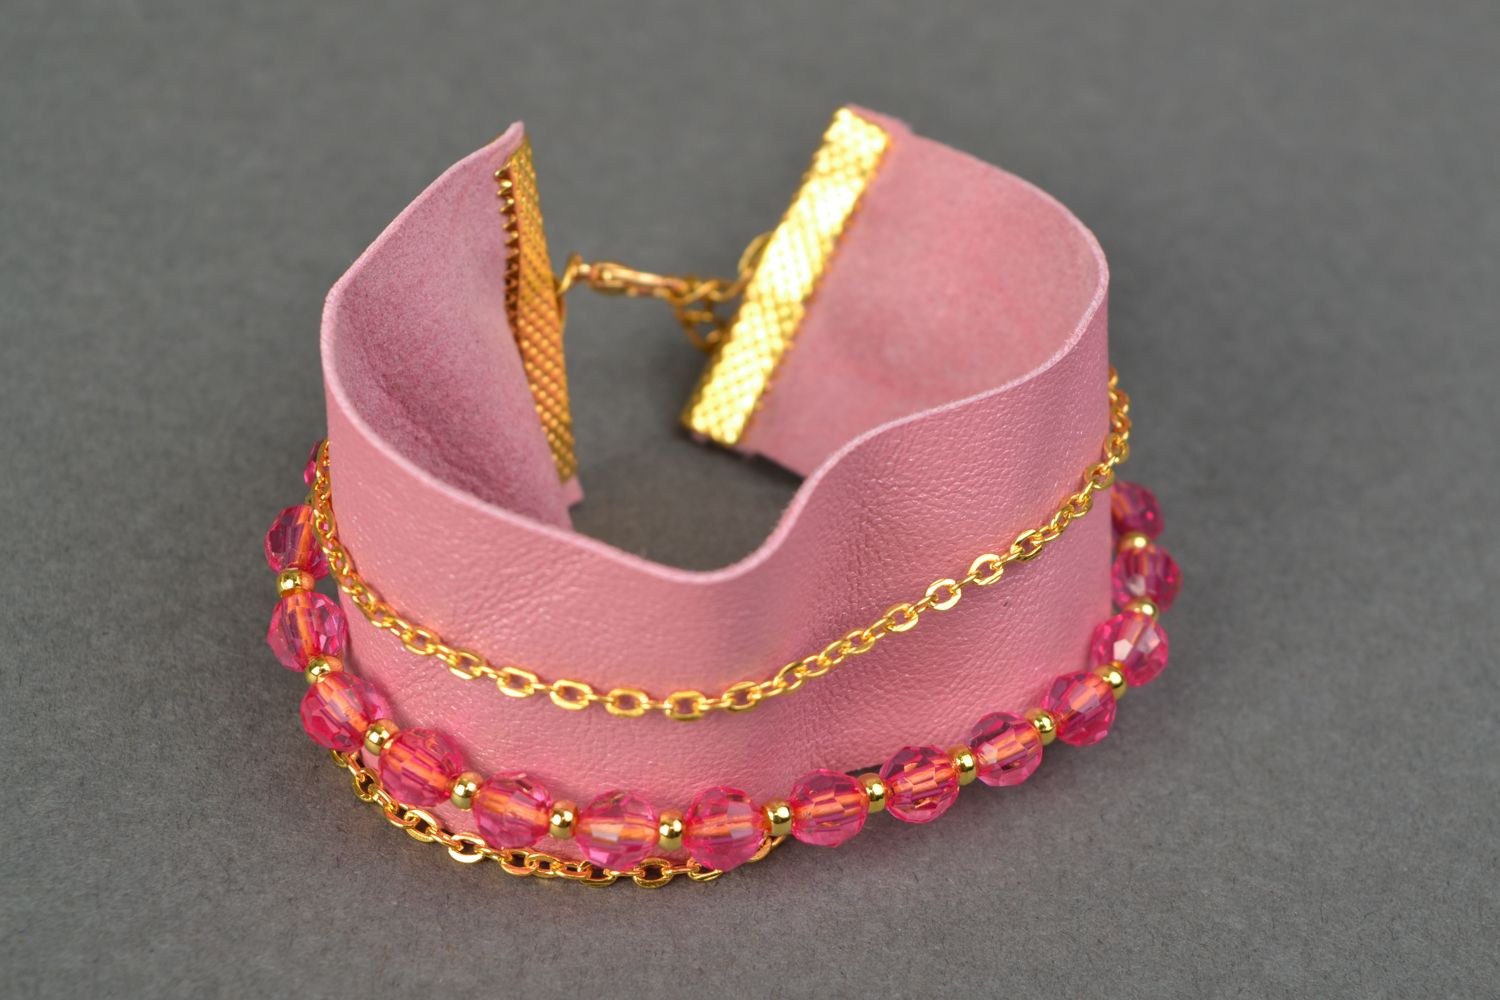 Large bracelet en cuir rose avec chaînettes et perles fantaisie photo 1